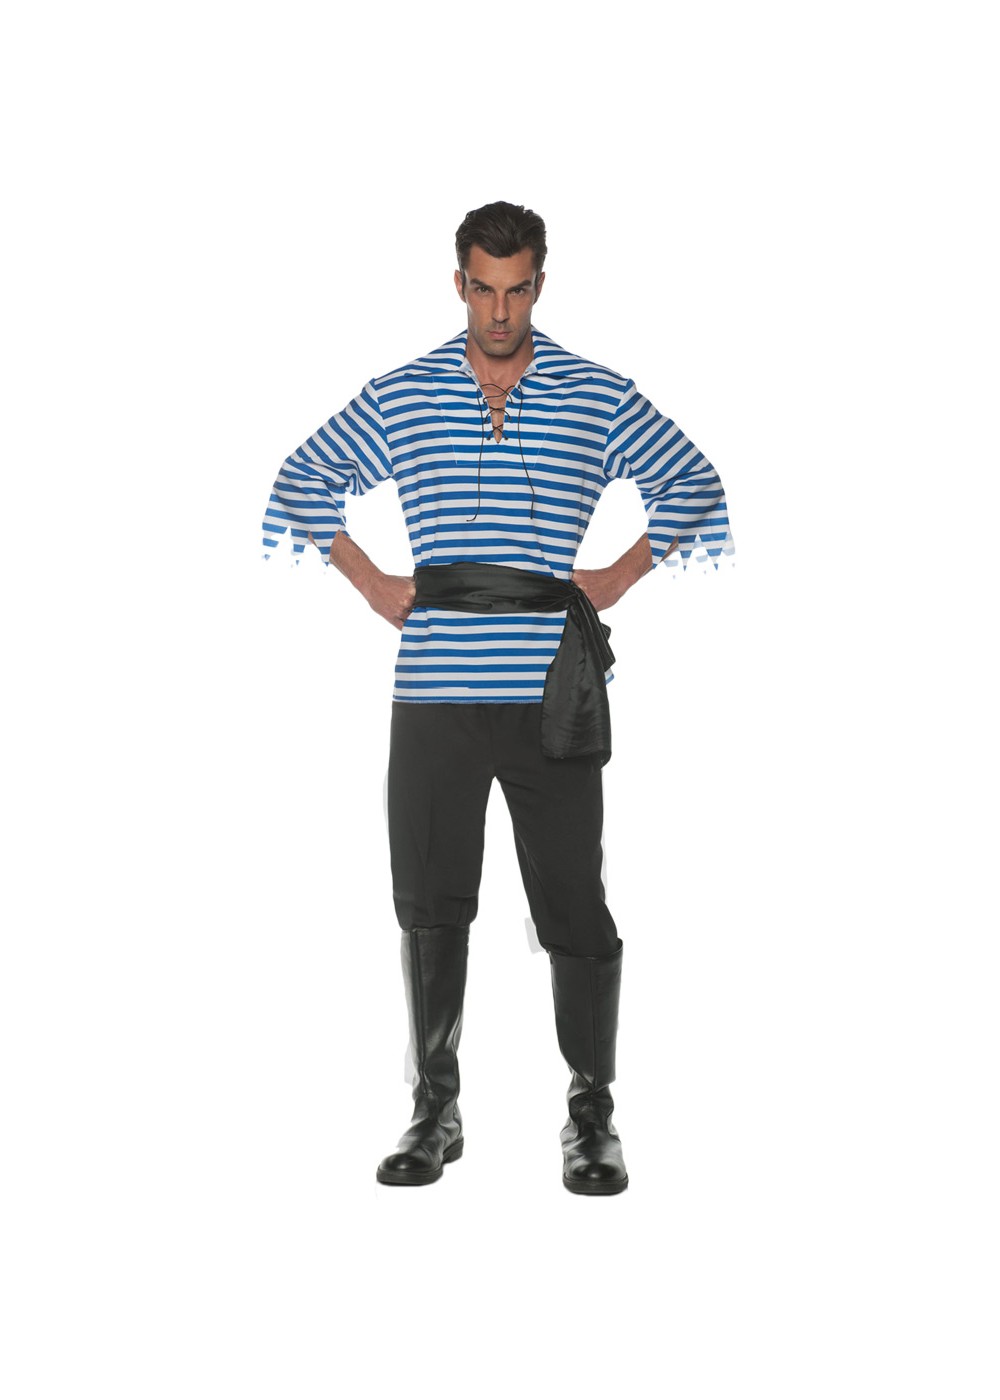 Blue Men Pirate Costume